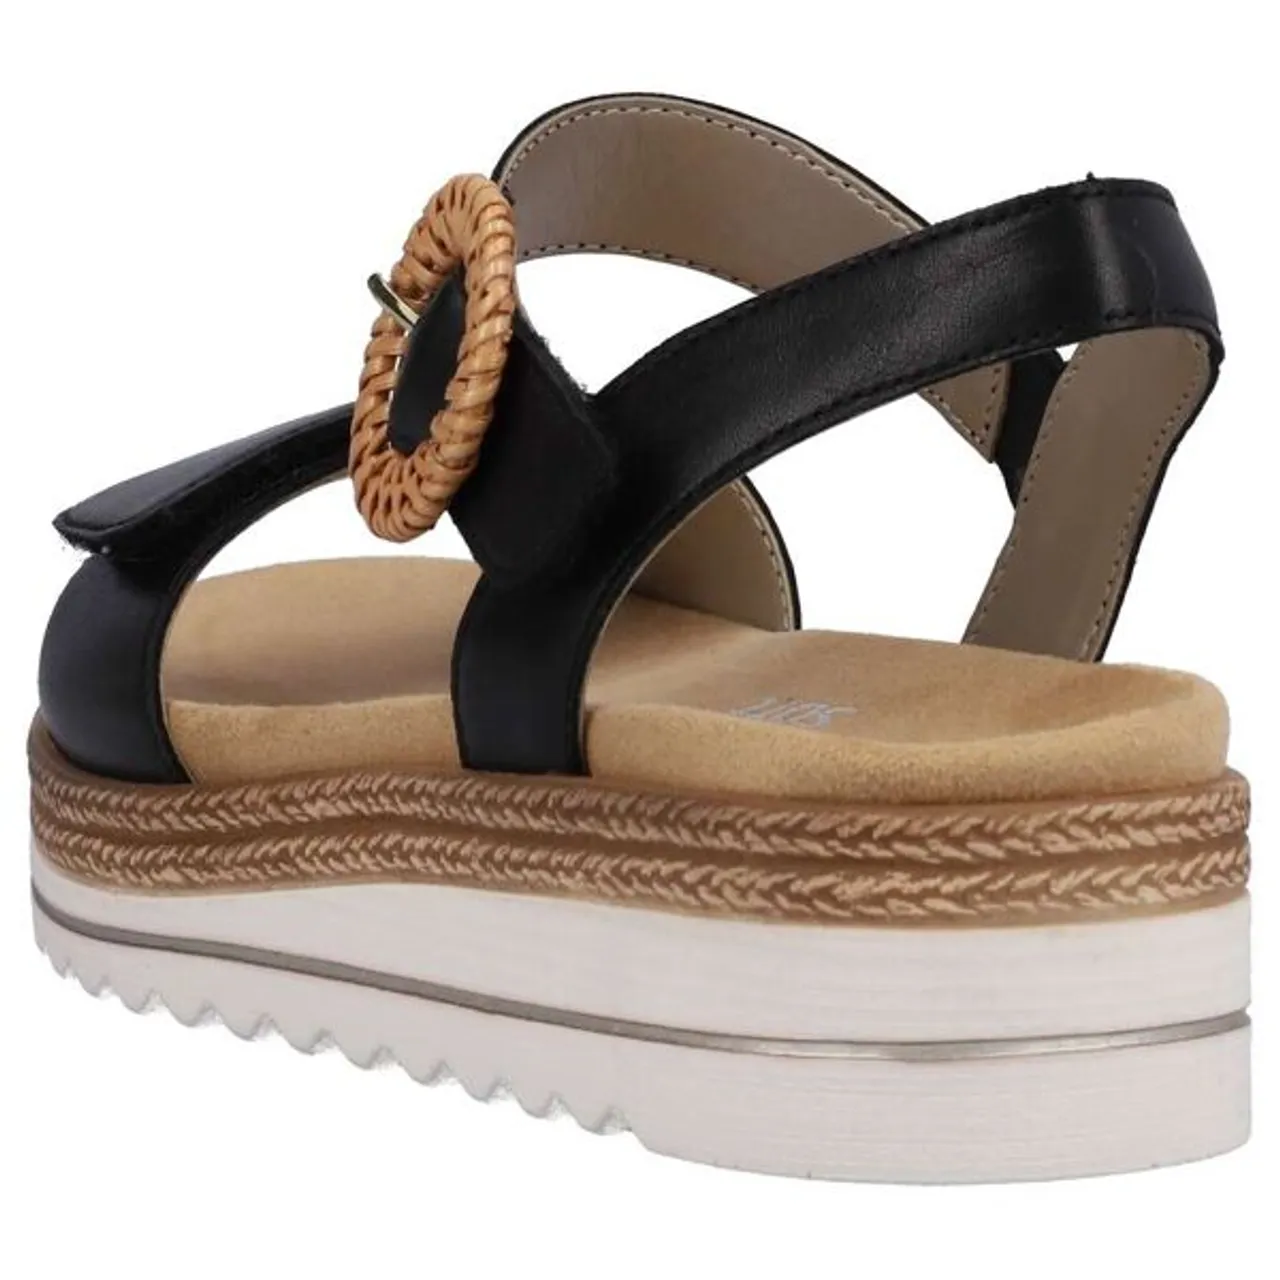 Keilsandalette REMONTE Gr. 42, schwarz Damen Schuhe Sandaletten Sommerschuh, Sandale, Keilabsatz, mit praktischem Klettverschluss